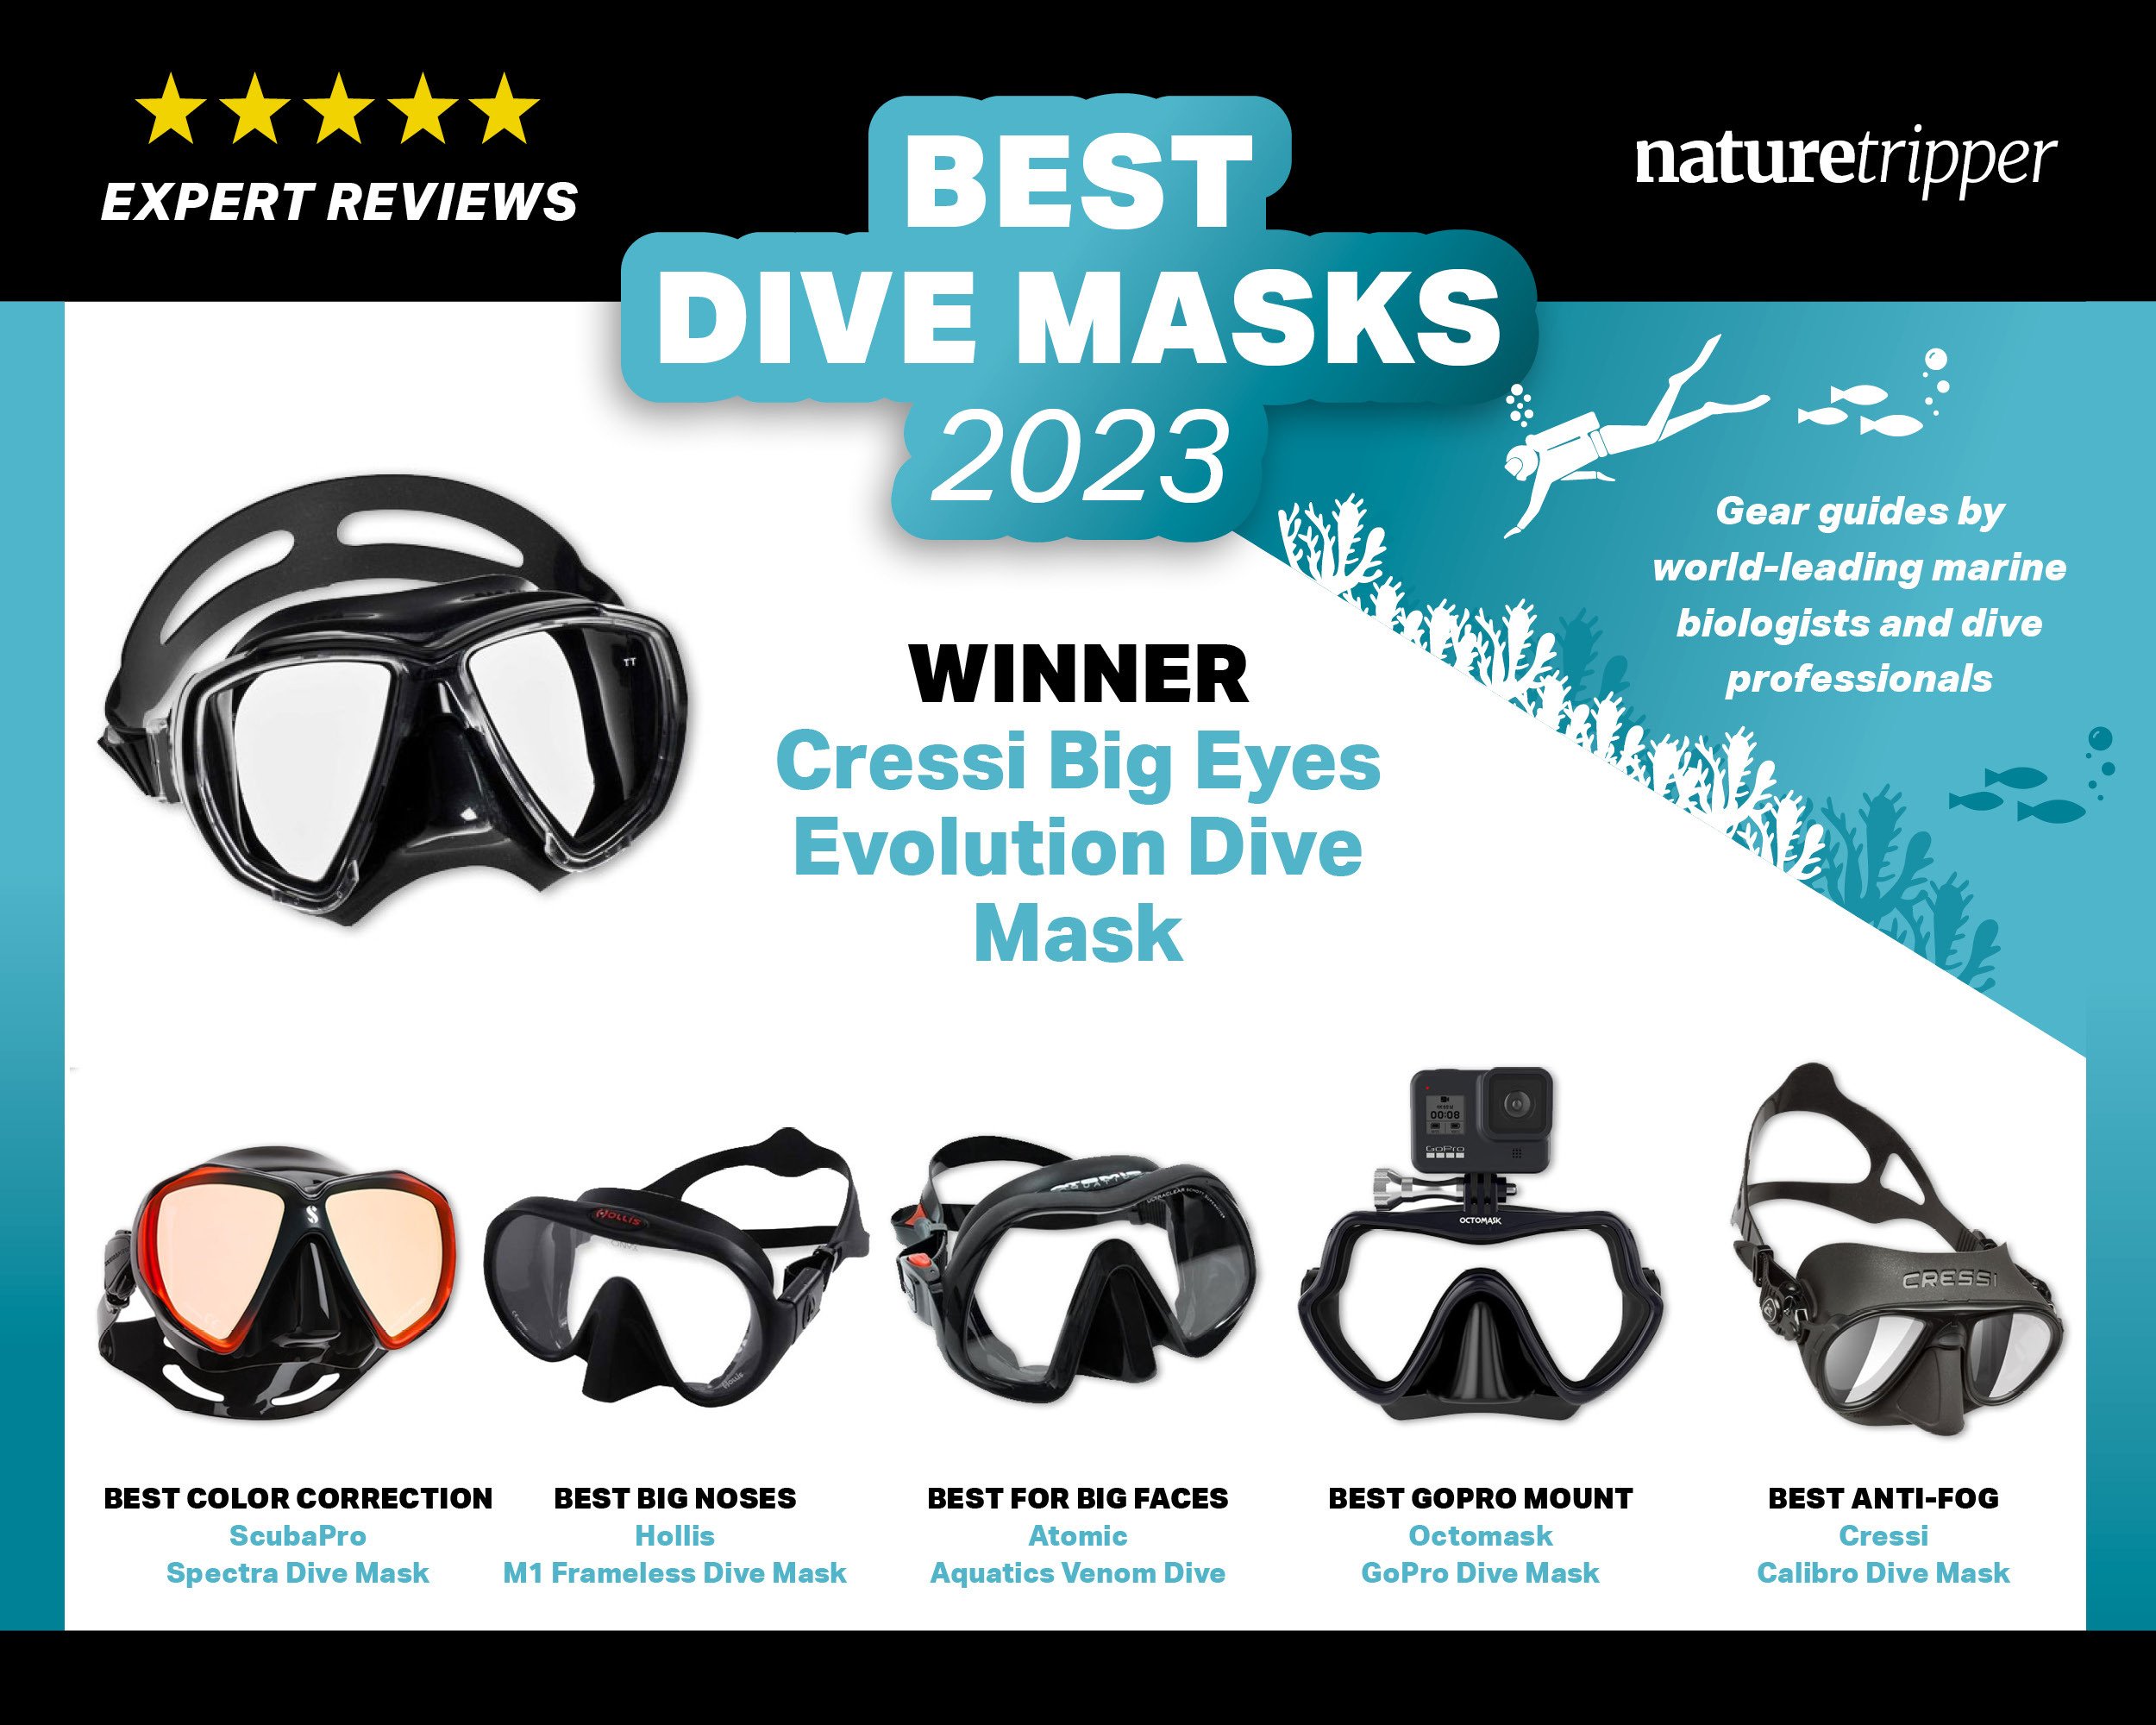 Efterforskning Glat Erhvervelse Best Dive Masks for 2023 🏆 [Marine Biologist Reviewed]